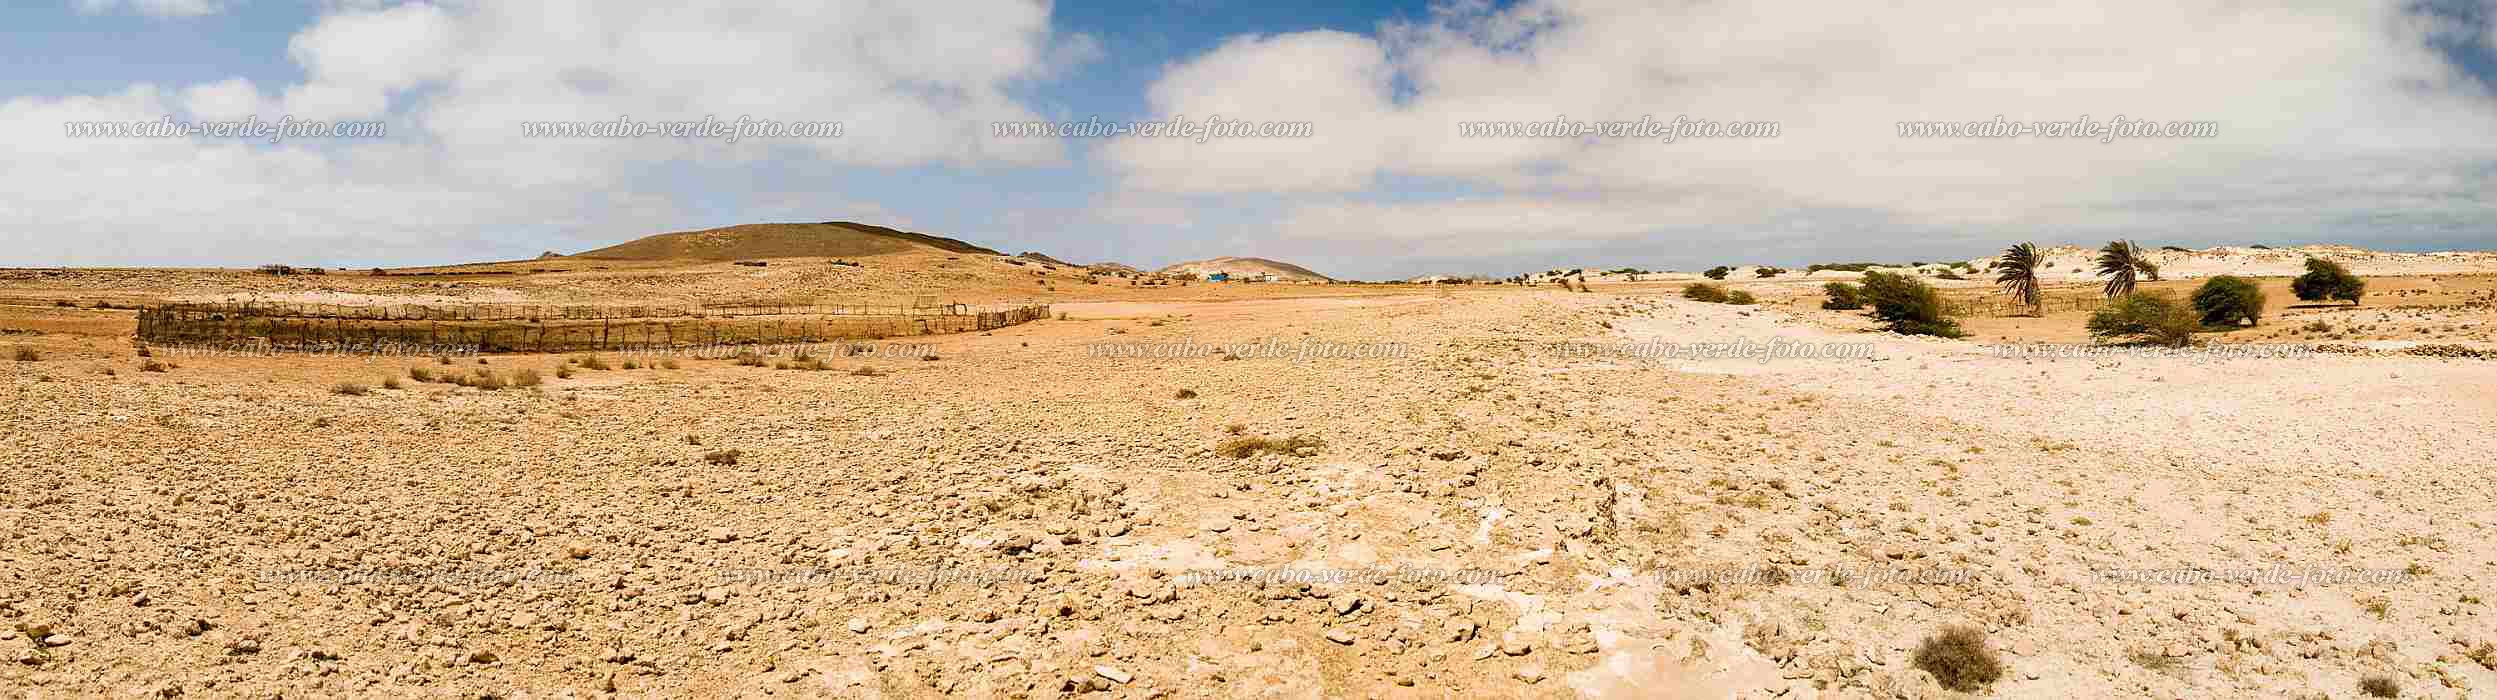 Boa Vista : Bofareia : caminho no deserto : Landscape DesertCabo Verde Foto Gallery